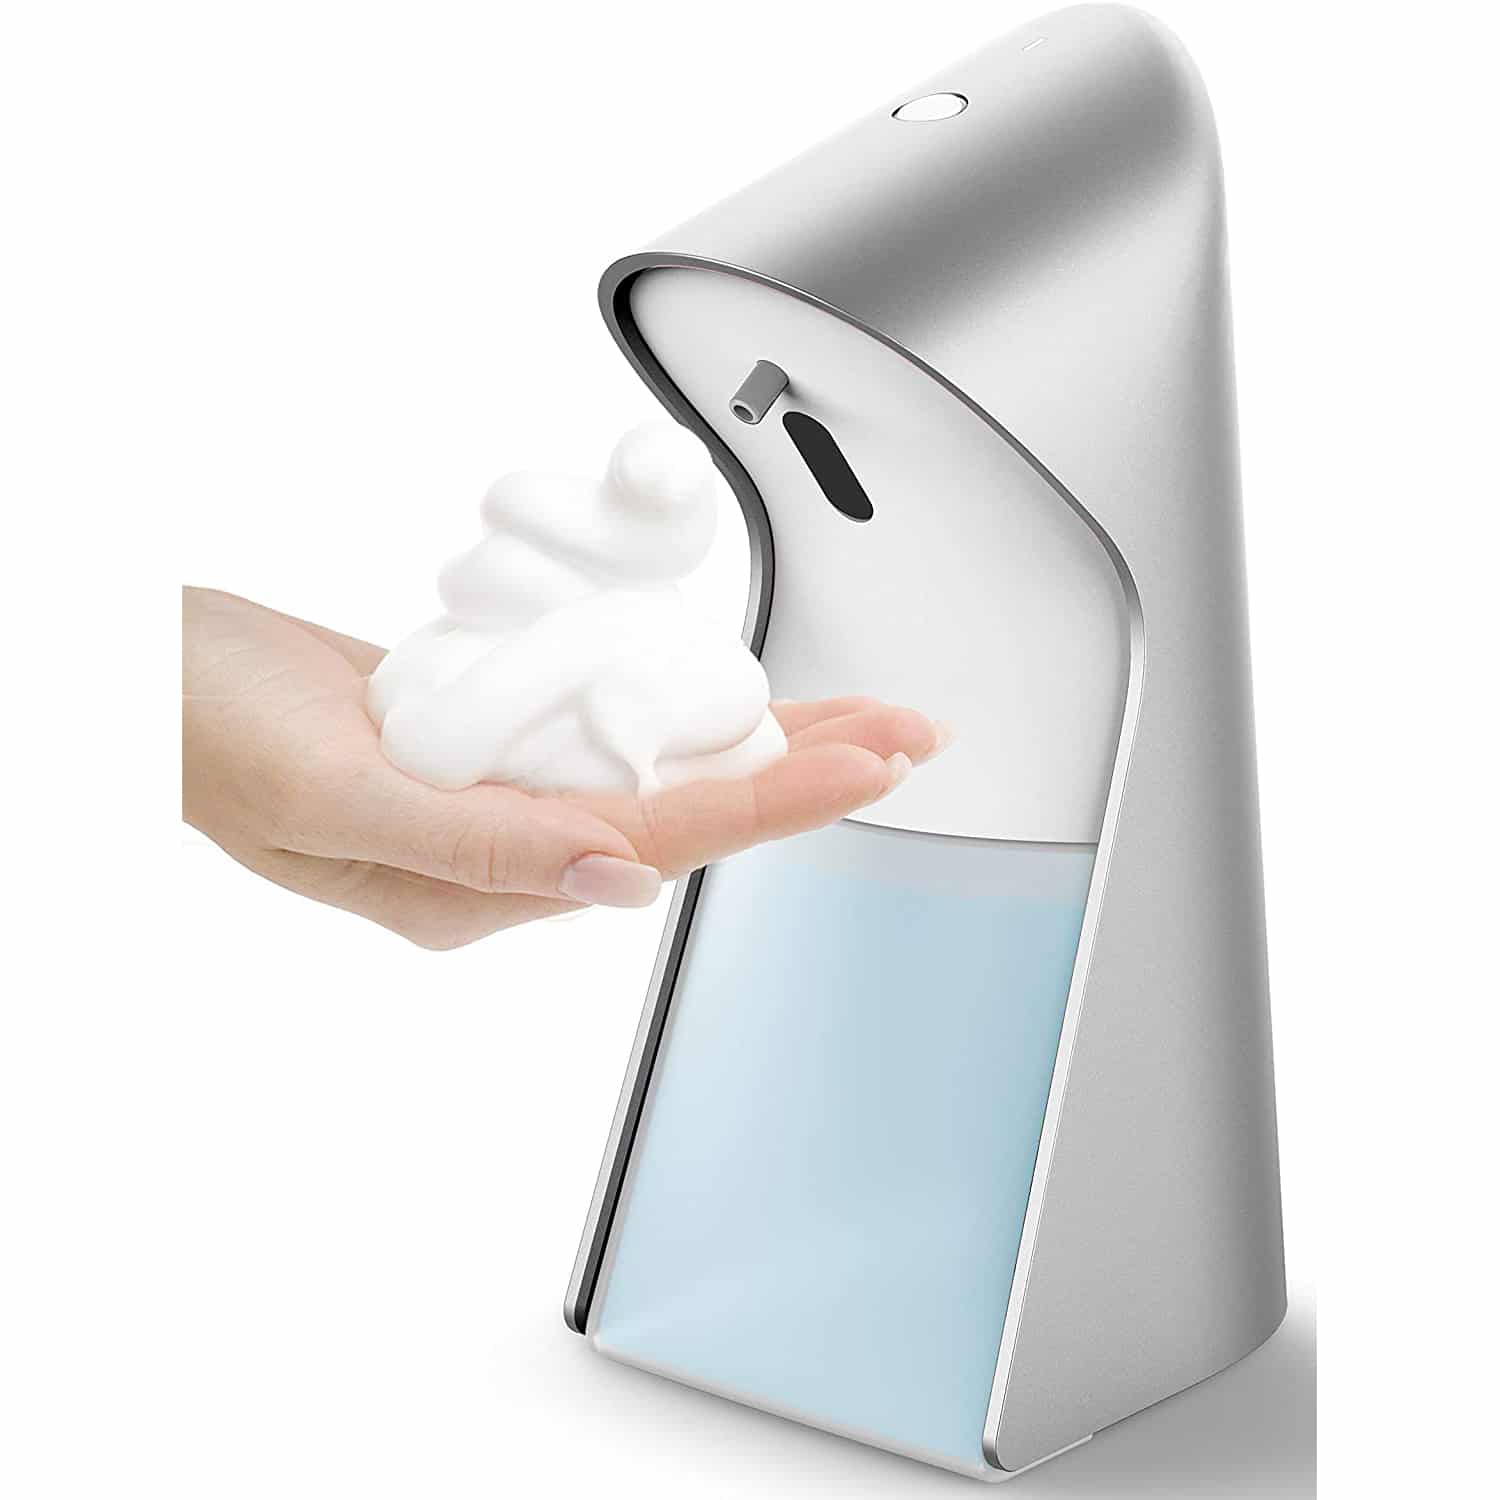 best automatic soap dispenser 2022